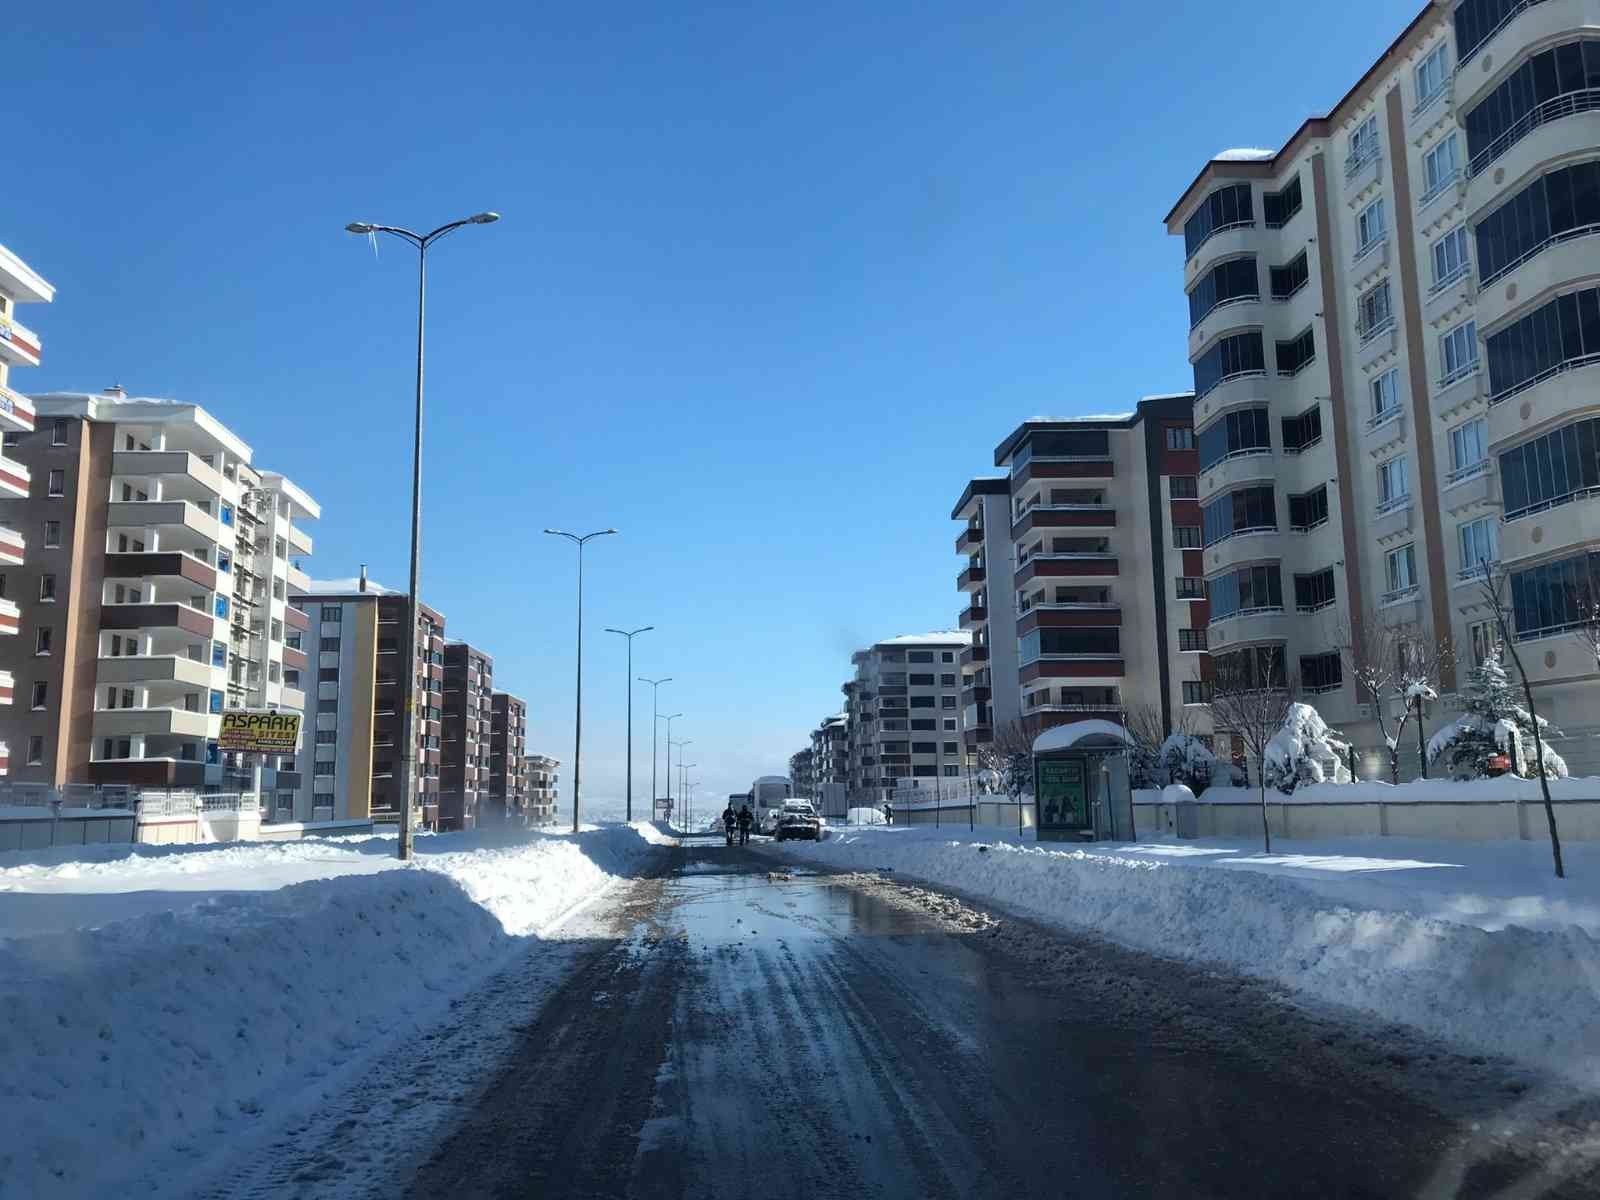 Gaziantep’te karla mücadele sürüyor #gaziantep